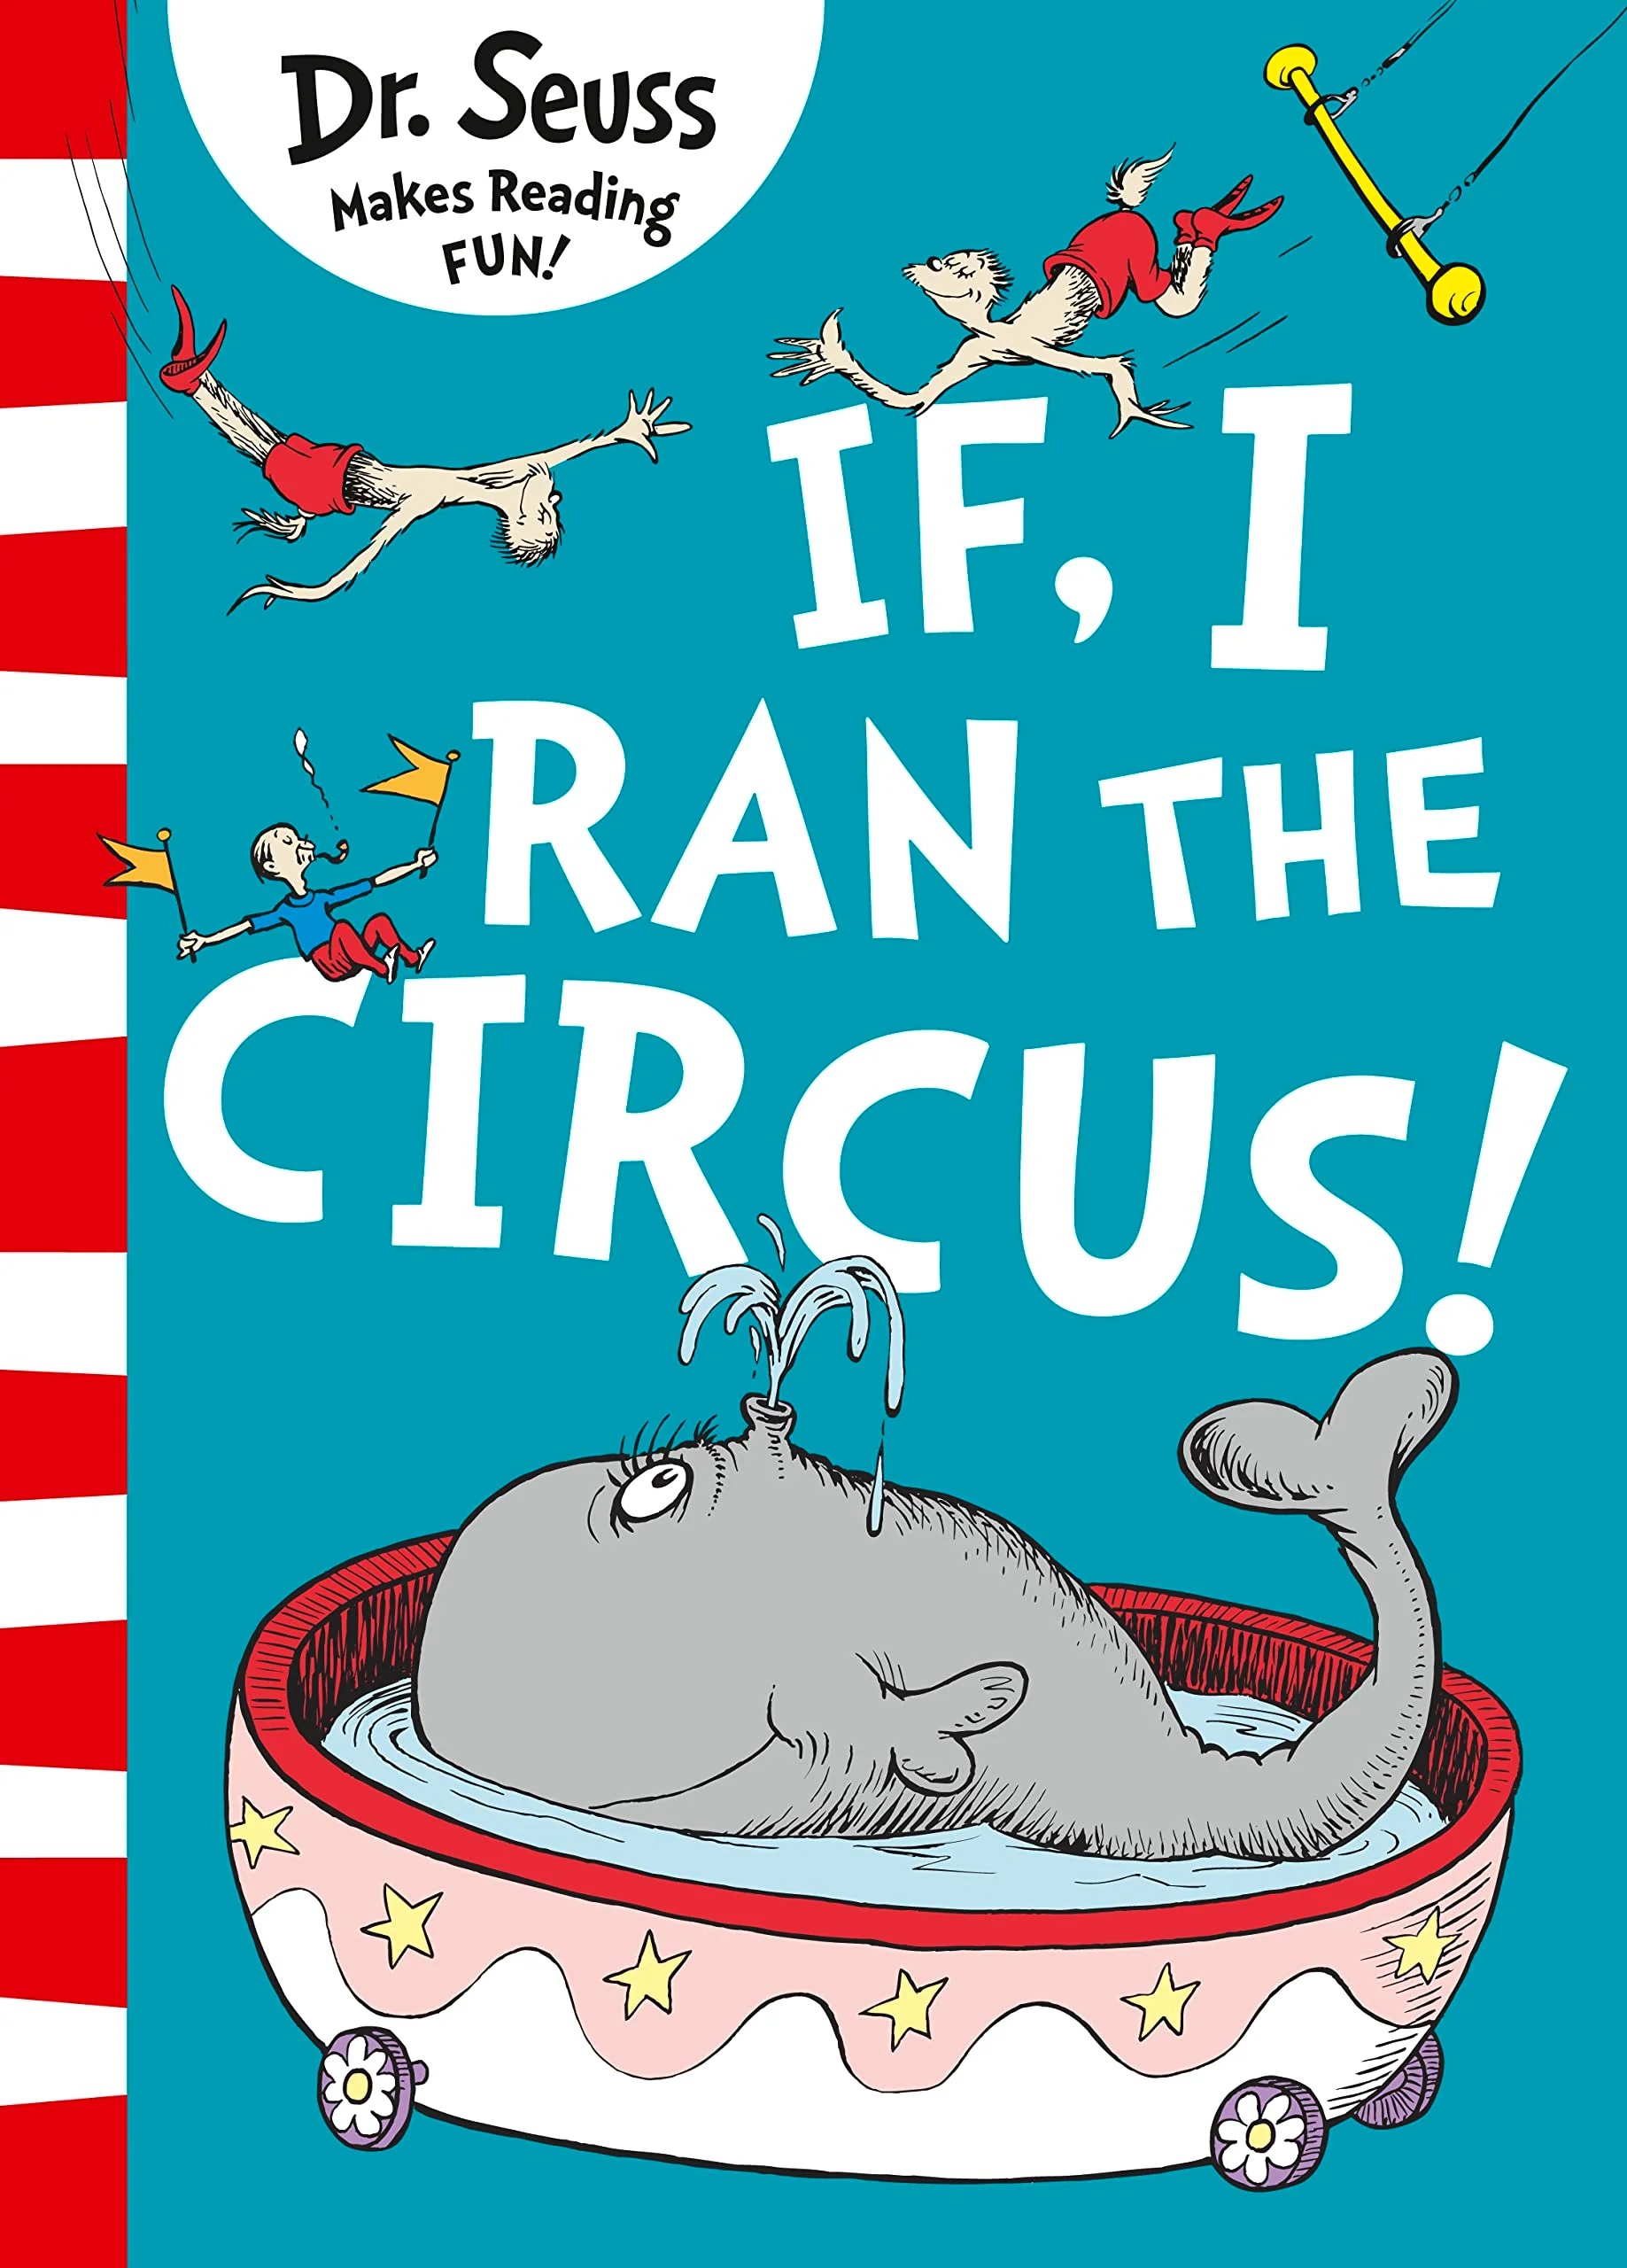 Dr Seuss - If i ran the circus